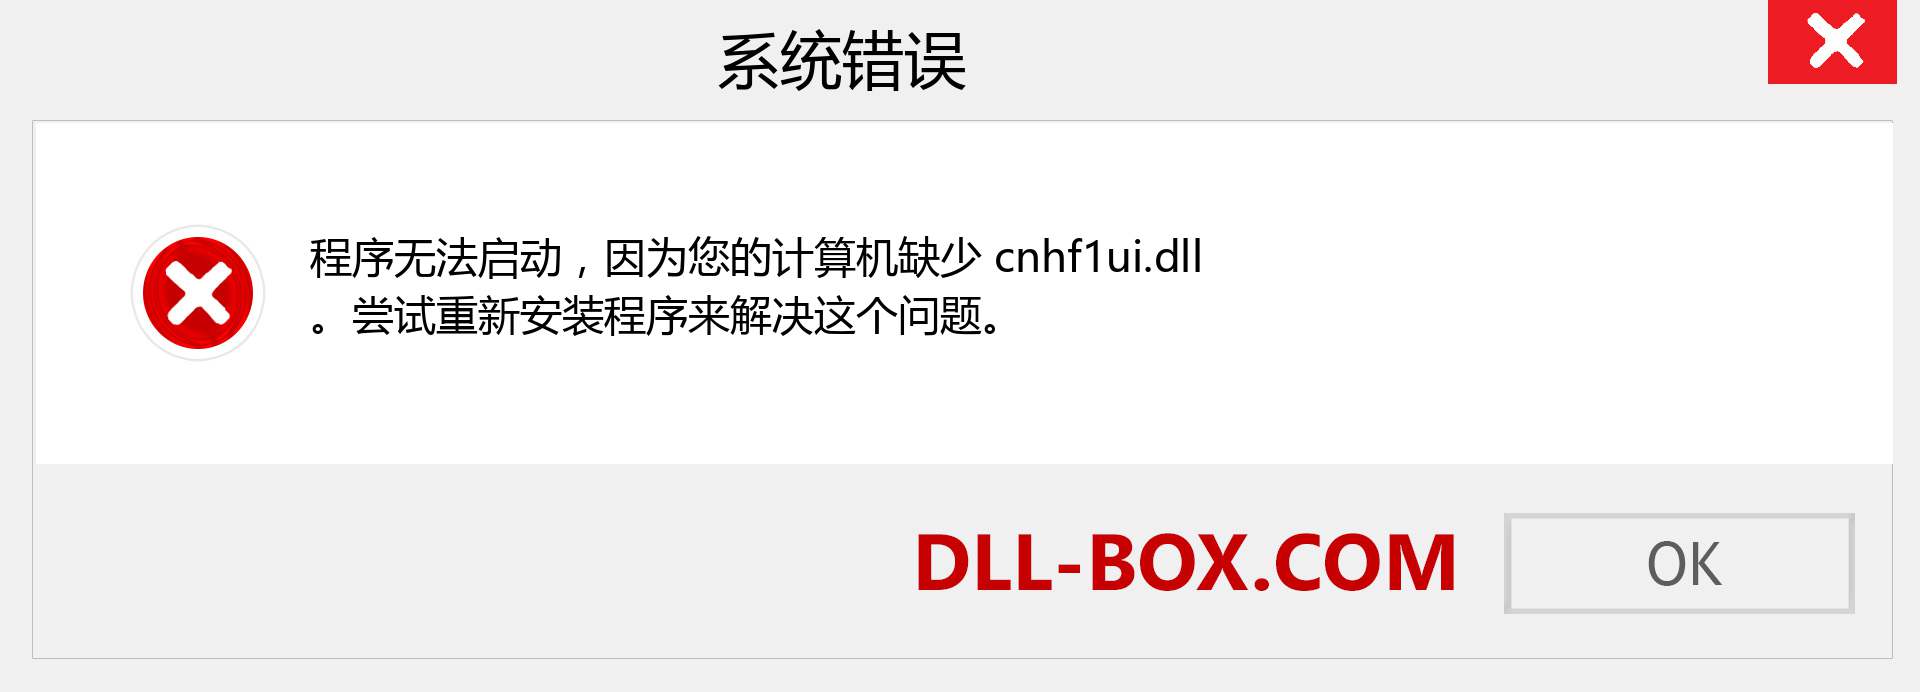 cnhf1ui.dll 文件丢失？。 适用于 Windows 7、8、10 的下载 - 修复 Windows、照片、图像上的 cnhf1ui dll 丢失错误